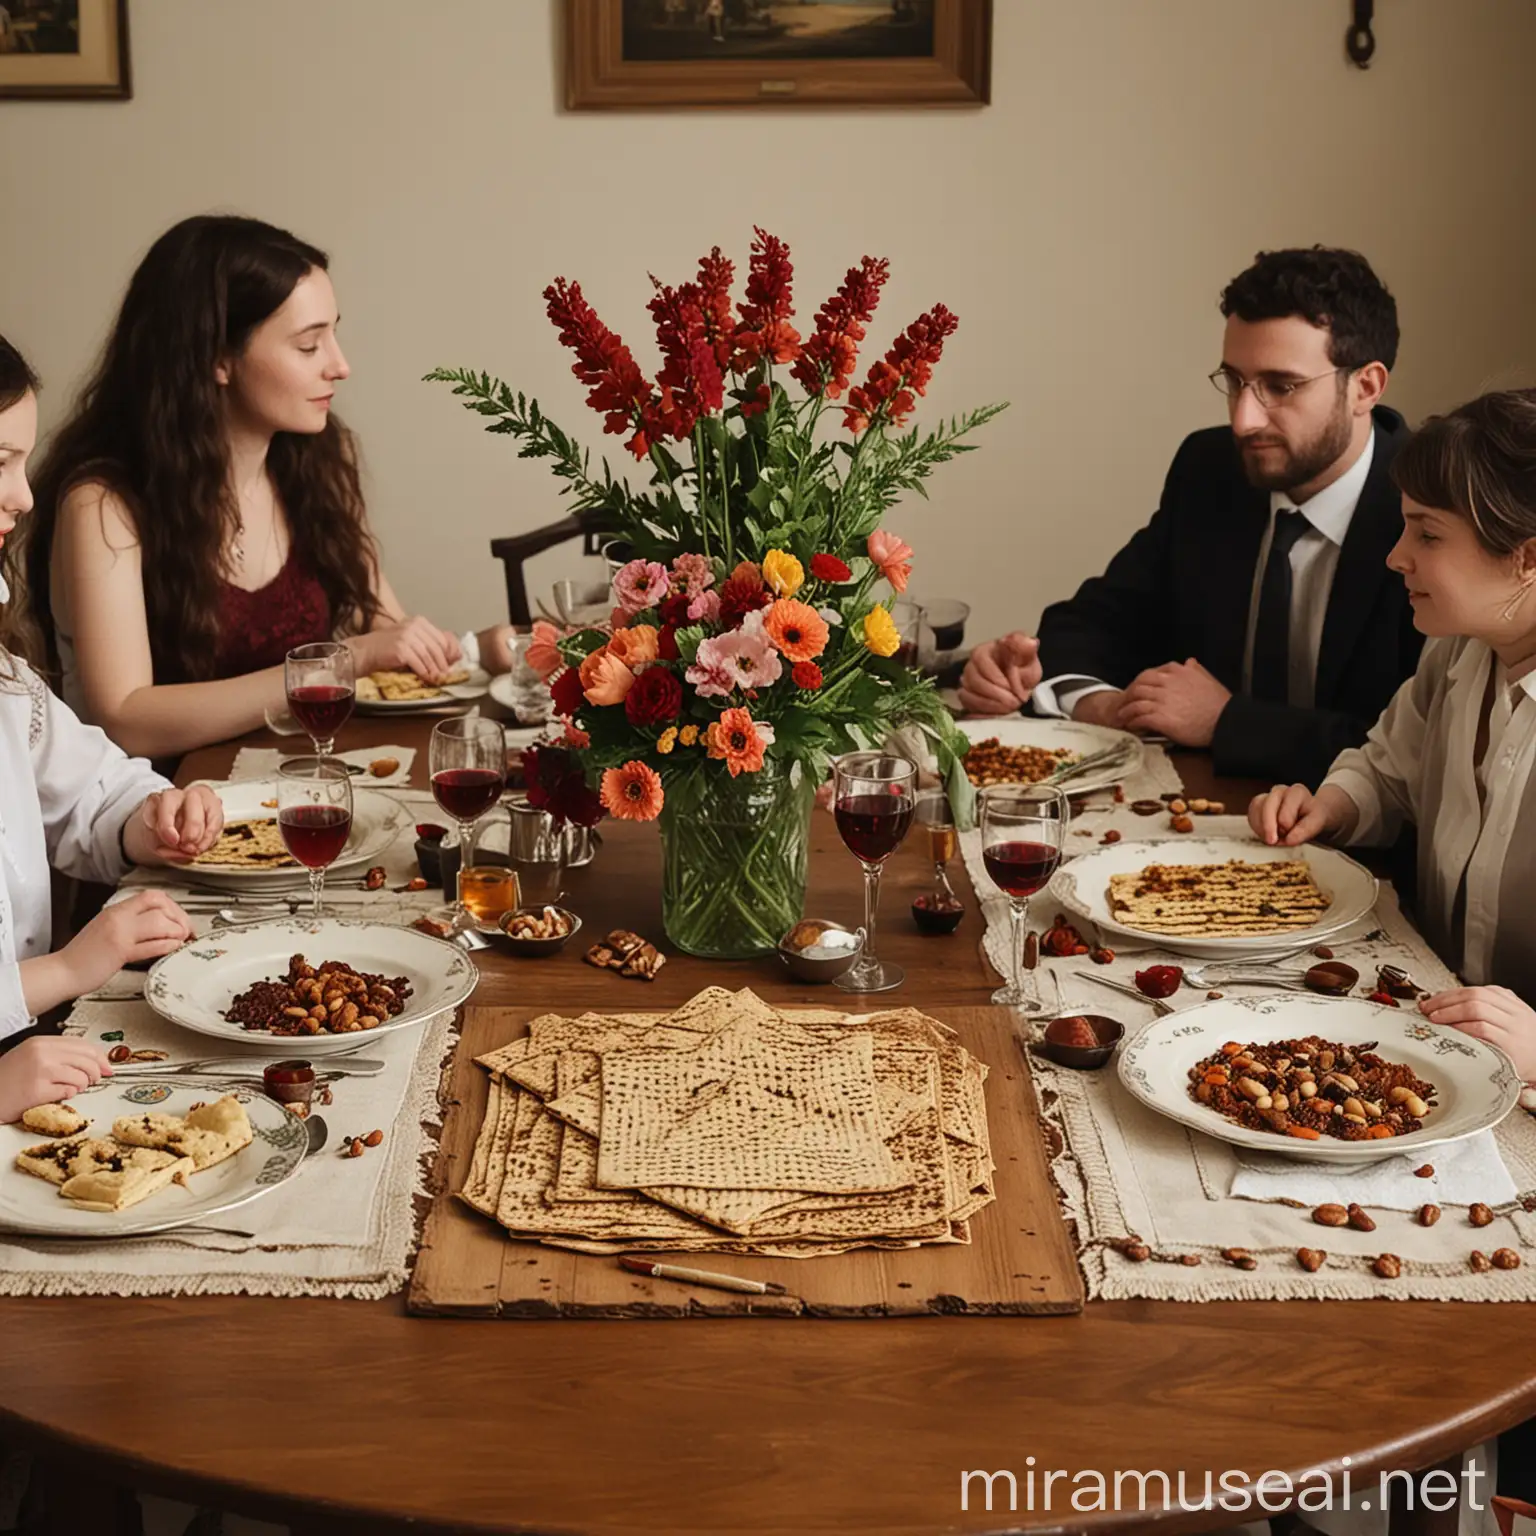 המשפחה יושבת סביב שולחן פסח. על השולחן שלוש מצות, סידורים, ארבע כוסות יין עם פרחי בקבוק יין ואגוזים.